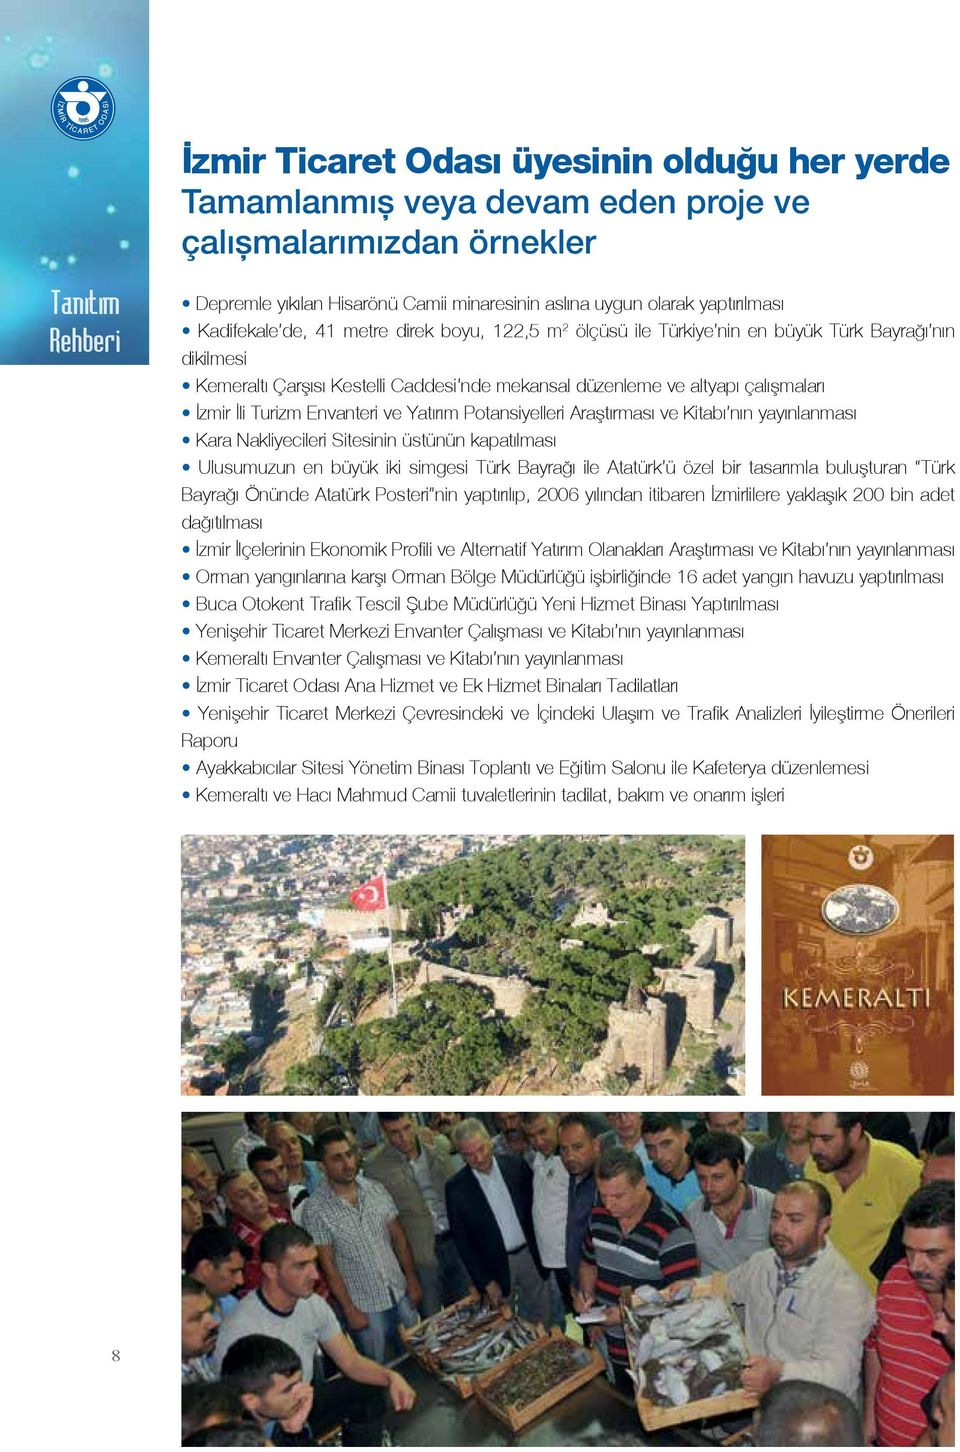 İzmir İli Turizm Envanteri ve Yatırım Potansiyelleri Araştırması ve Kitabı nın yayınlanması Kara Nakliyecileri Sitesinin üstünün kapatılması Ulusumuzun en büyük iki simgesi Türk Bayrağı ile Atatürk ü